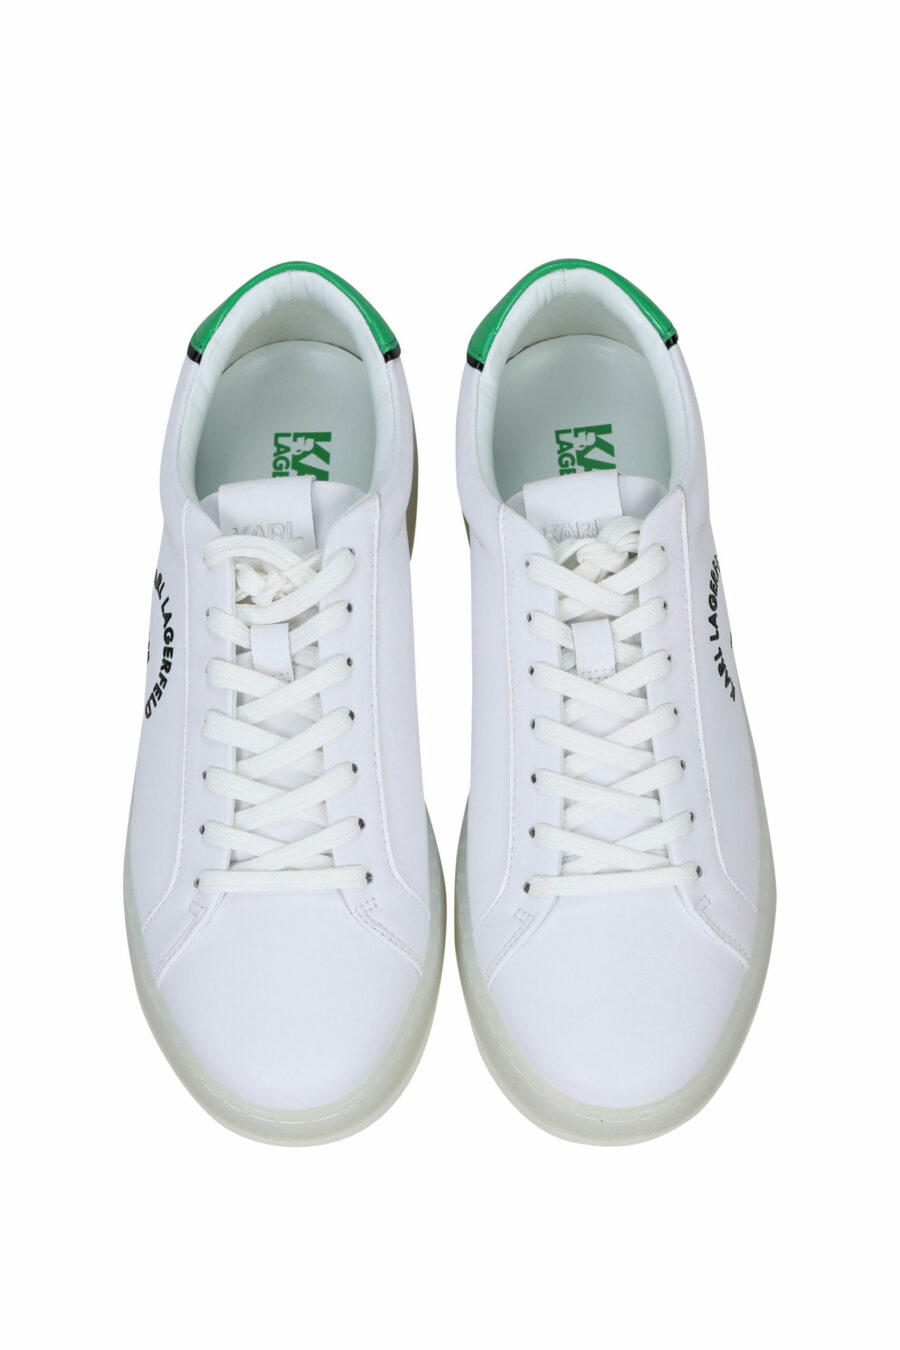 Weiße Turnschuhe mit grünen Details und "st rue guillaume" Logo - 5059529291289 4 skaliert